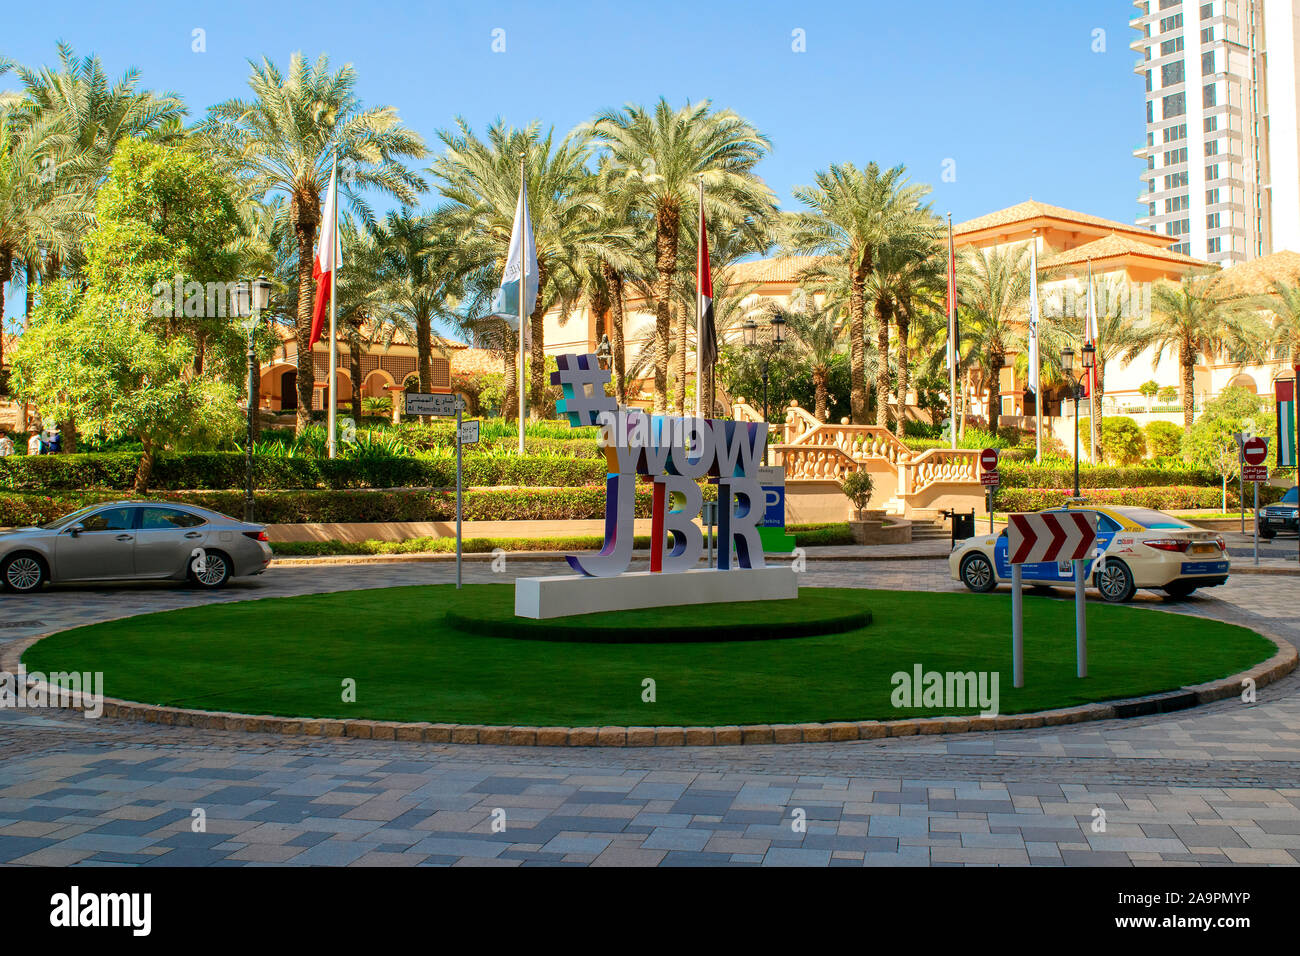 Dubaï / Emirats arabes unis - 11 novembre 2019 : WOW JBR mot. Avis de Jumeirah Beach Residence Luxe quartier touristique avec de grands inscription 'JBR'. Banque D'Images